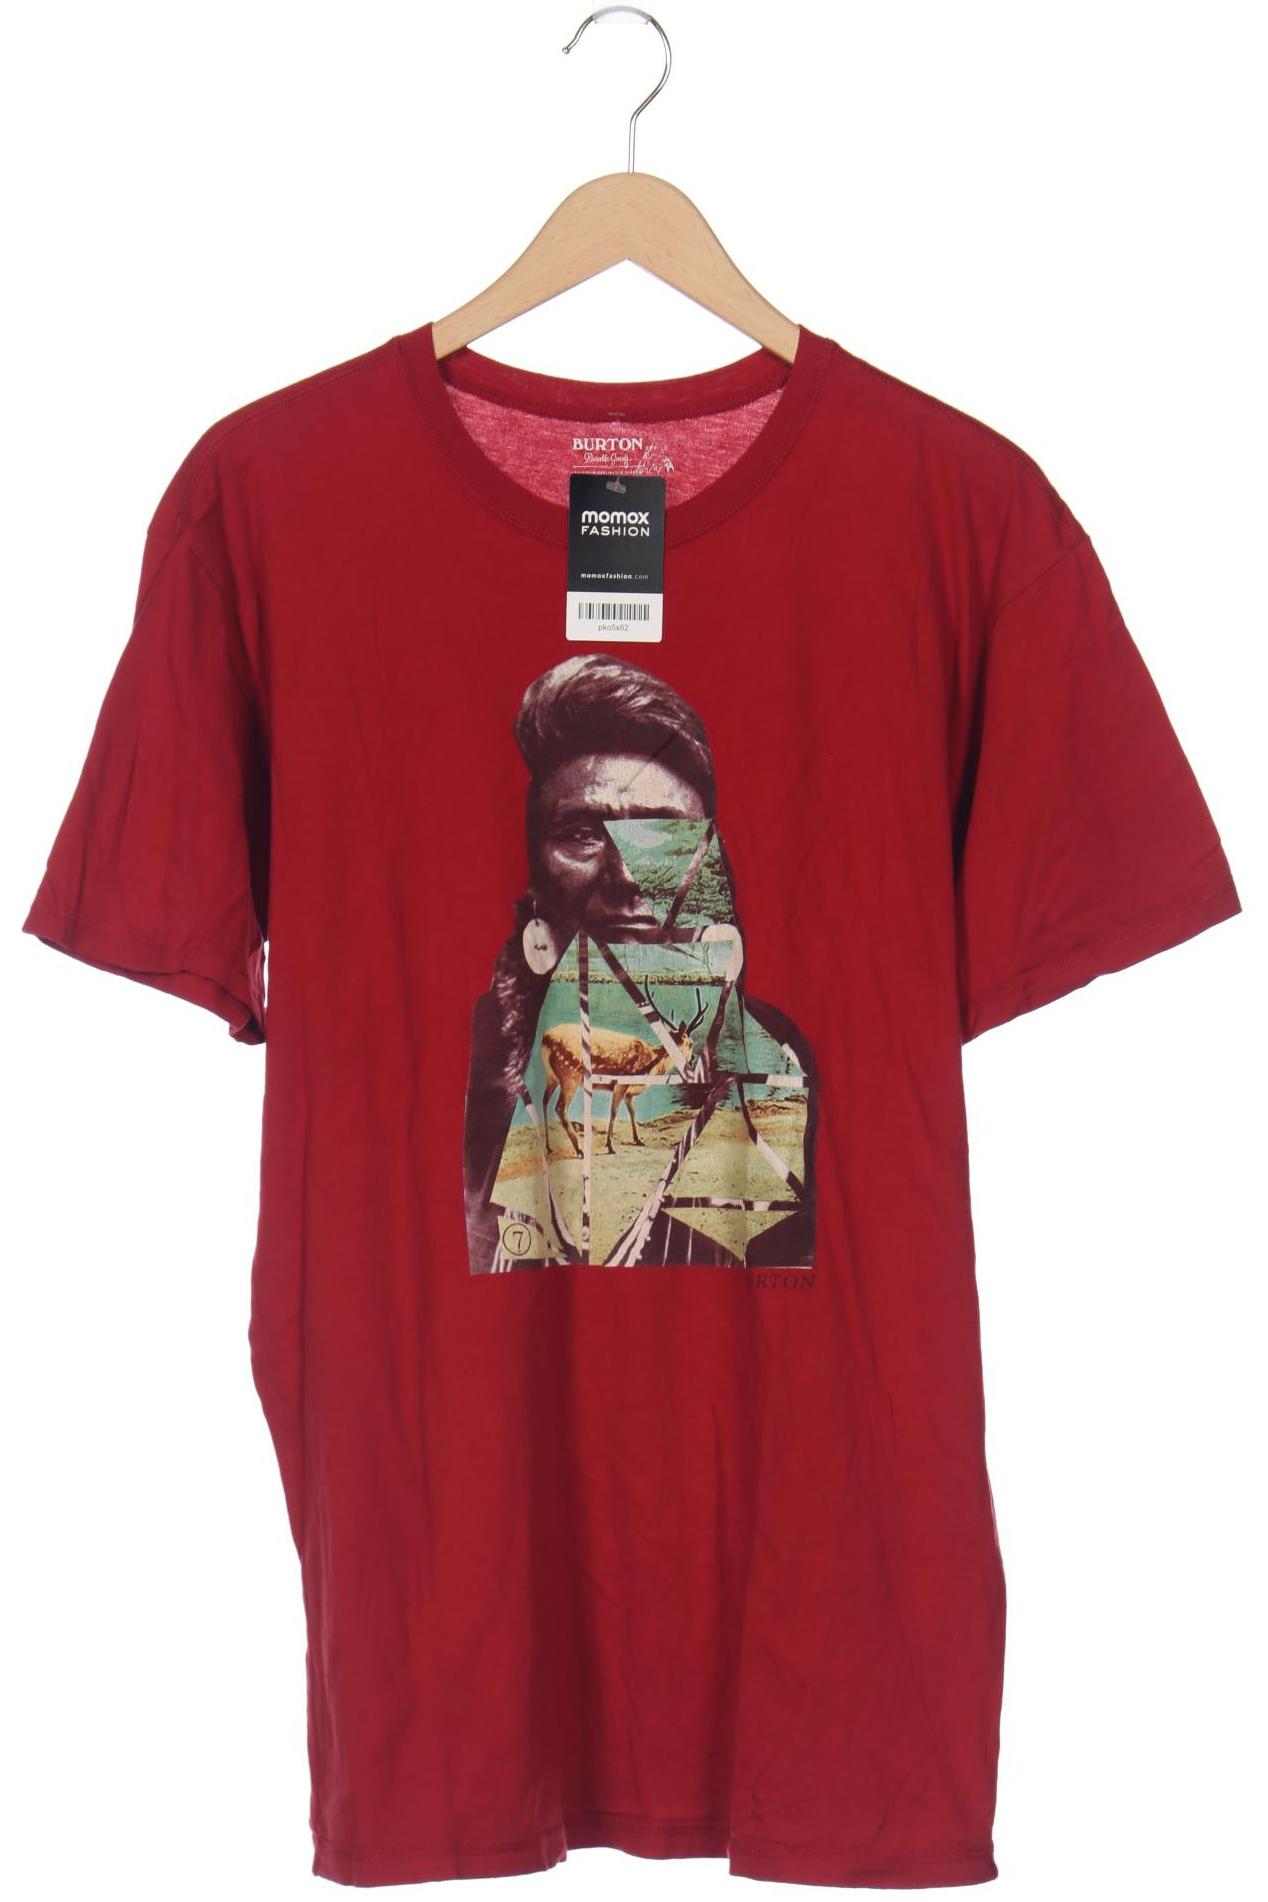 BURTON Herren T-Shirt, rot von Burton